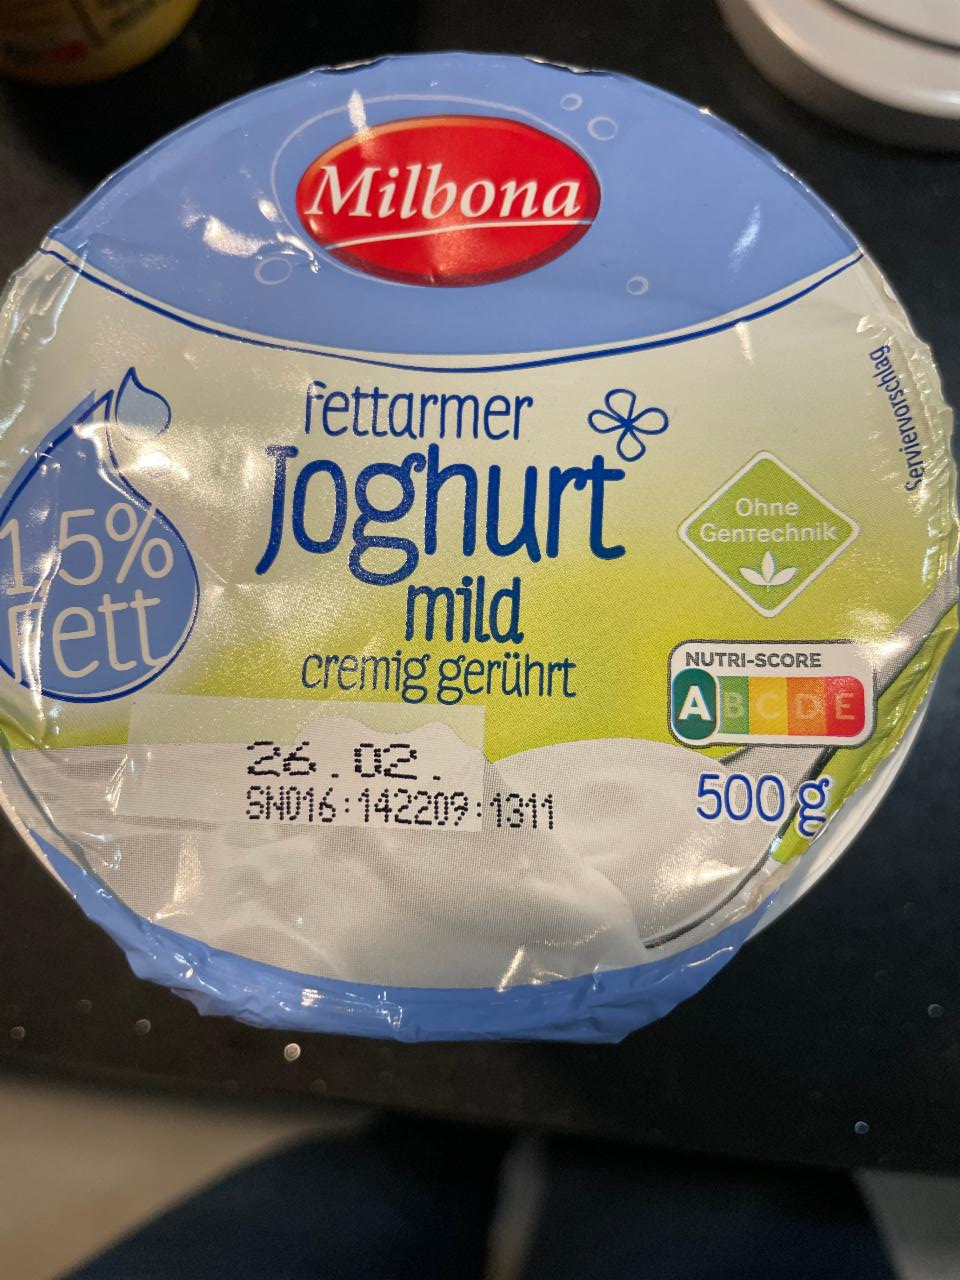 Fotografie - Fettarmer Joghurt mild 1,5% fett Milbona